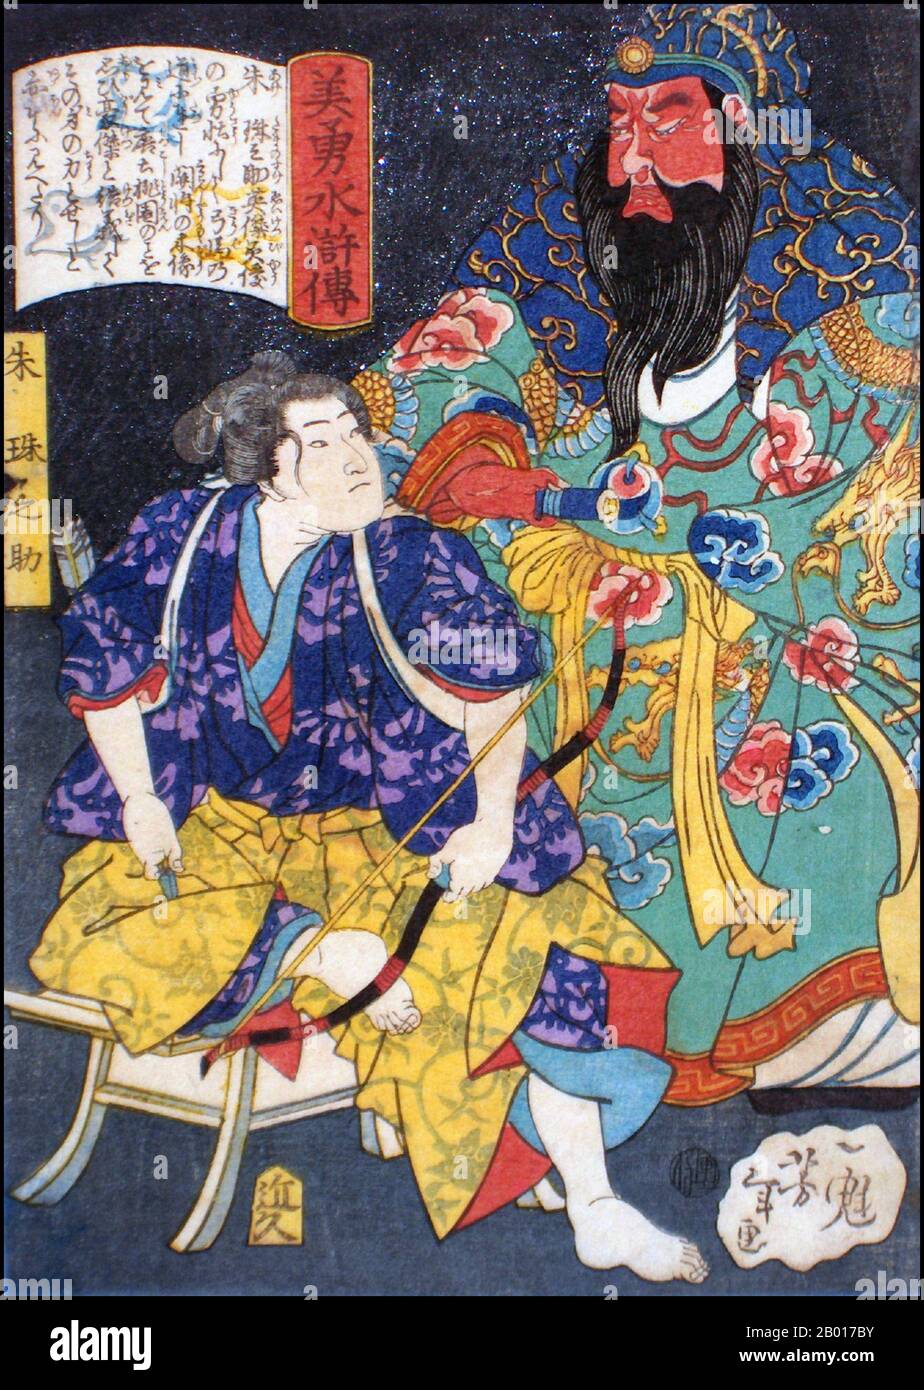 Giappone: 'Aka Tamanosuke seduto presso la Statua di un generale cinese'. Ukiyo-e stampa di blocco di legno dalla serie 'Eroi del margine d'acqua' di Tsukioka Yoshitoshi (1839 - 9 giugno 1892), 1866. Tsukioka Yoshitoshi, anche chiamato Taiso Yoshitoshi, era un artista giapponese. È ampiamente riconosciuto come l'ultimo grande maestro di Ukiyo-e, un tipo di stampa giapponese a blocchi di legno. È inoltre considerato uno dei più grandi innovatori della forma. La sua carriera ha abbracciato due epoche – gli ultimi anni del Giappone feudale, e i primi anni del Giappone moderno dopo la Restaurazione Meiji. Foto Stock